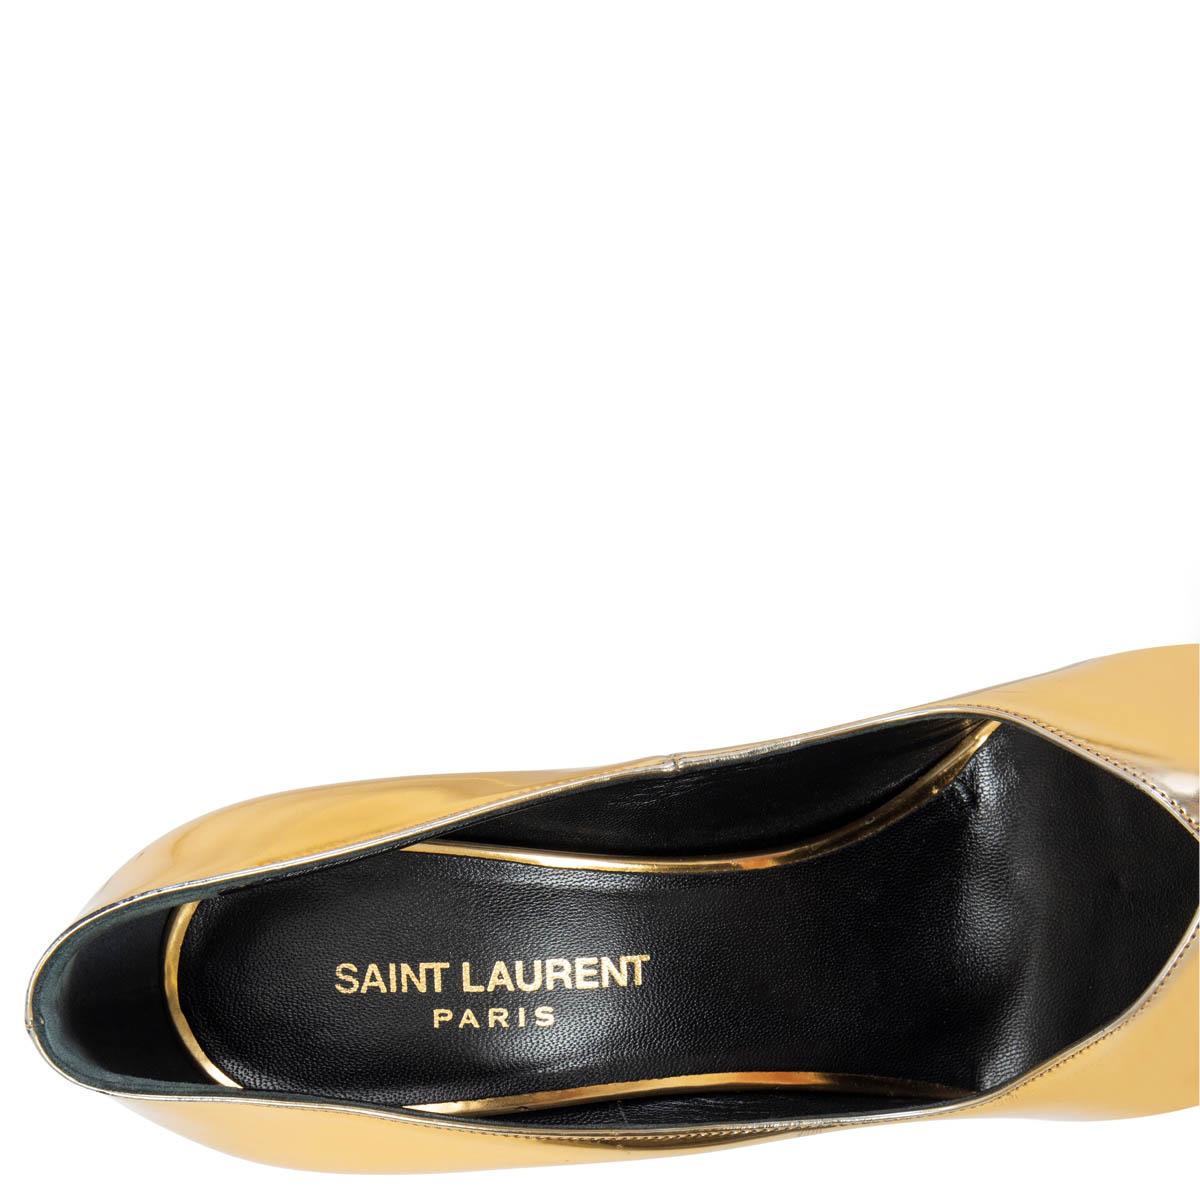 Gold SAINT LAURENT metallic gold leather PARIS Pointed Toe Pumps Shoes 39 For Sale